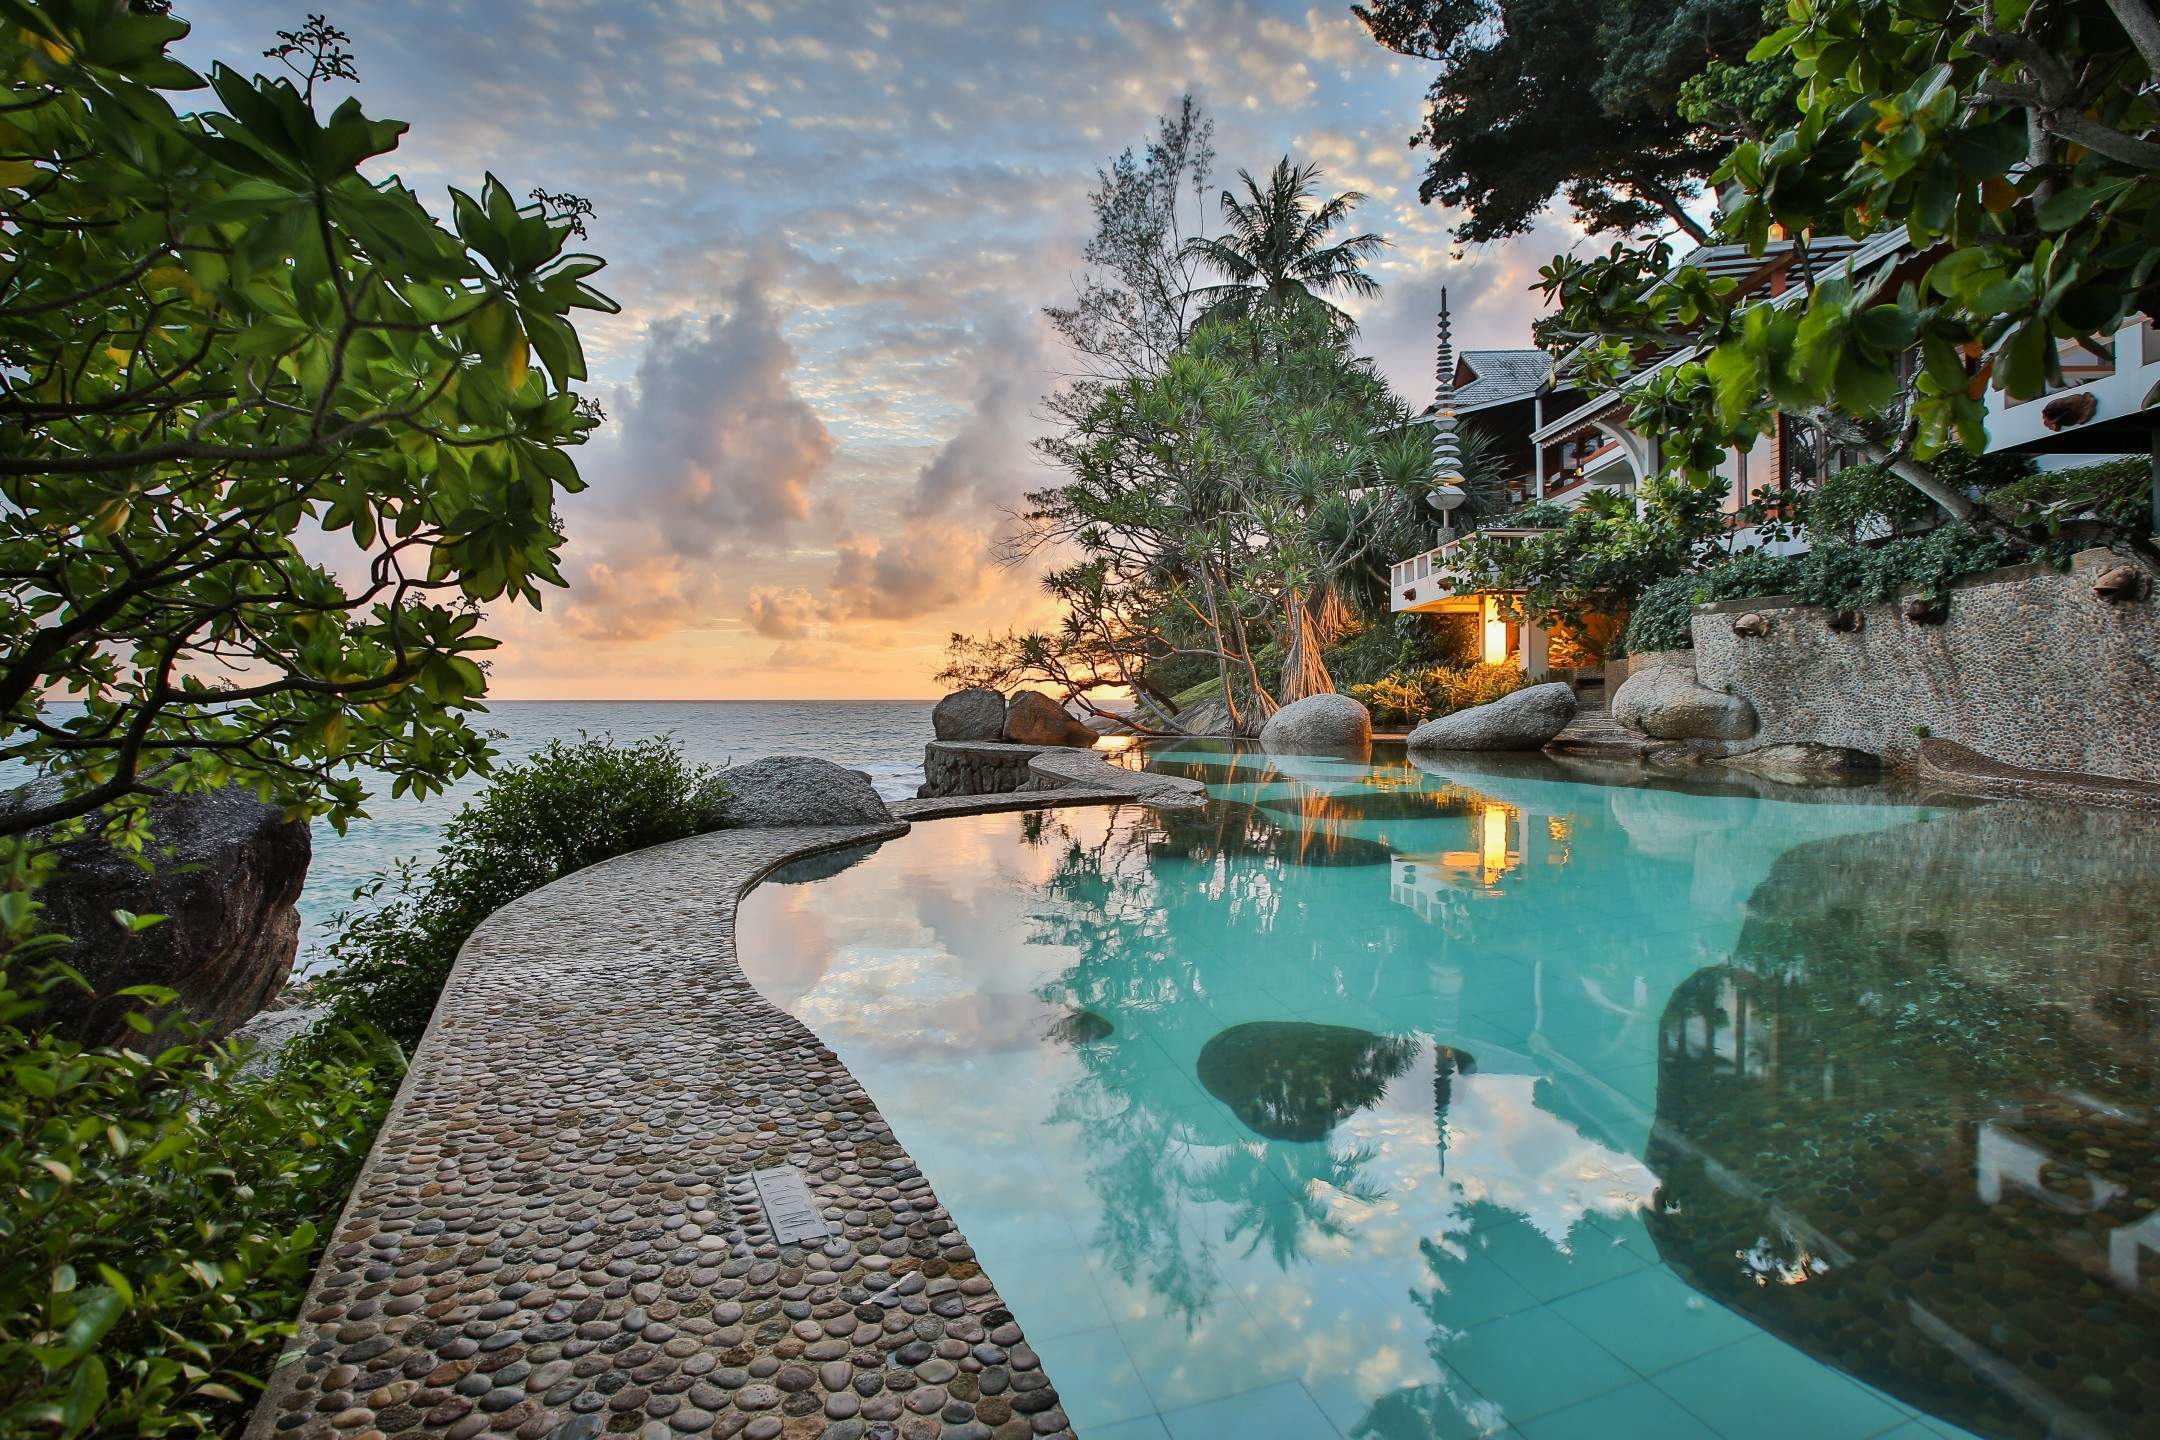 Rent penthouse PENTHOUSE SUITE, Thailand, Phuket, Kata | Villacarte